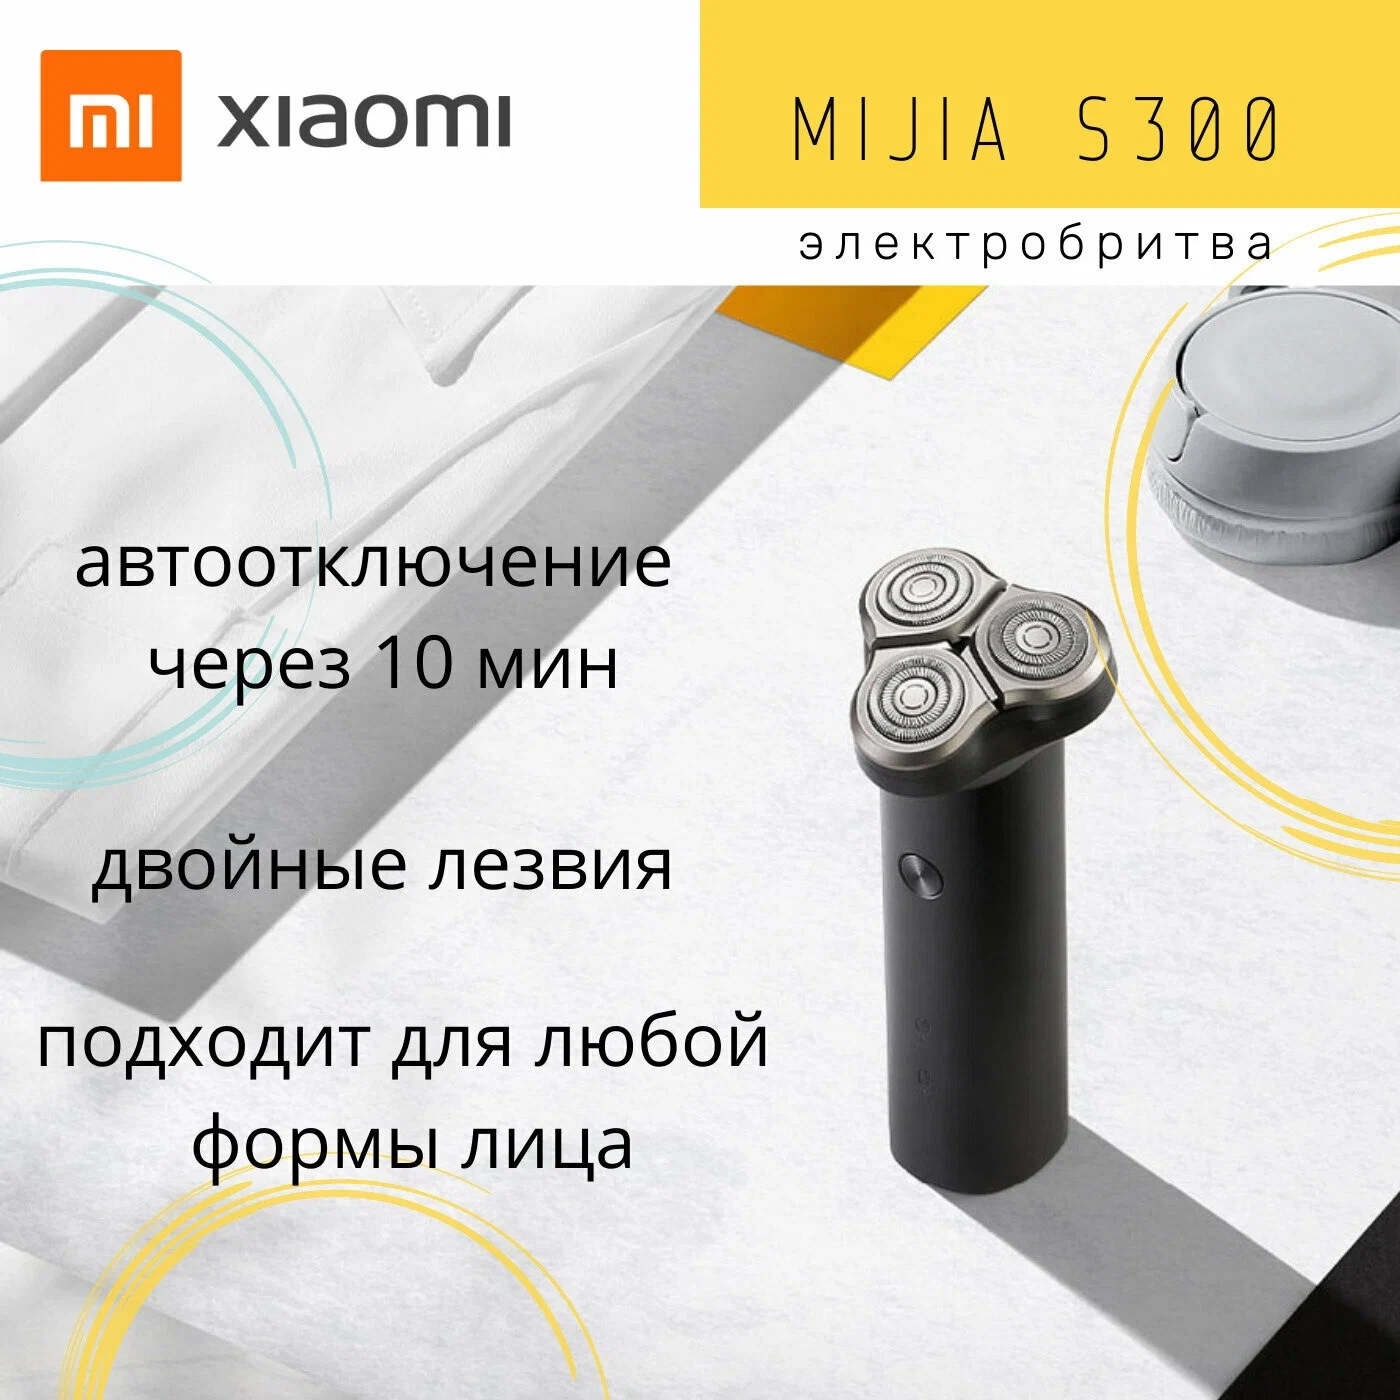 Электробритва Xiaomi Mijia S300 Черный в Челябинске купить по недорогим ценам с доставкой